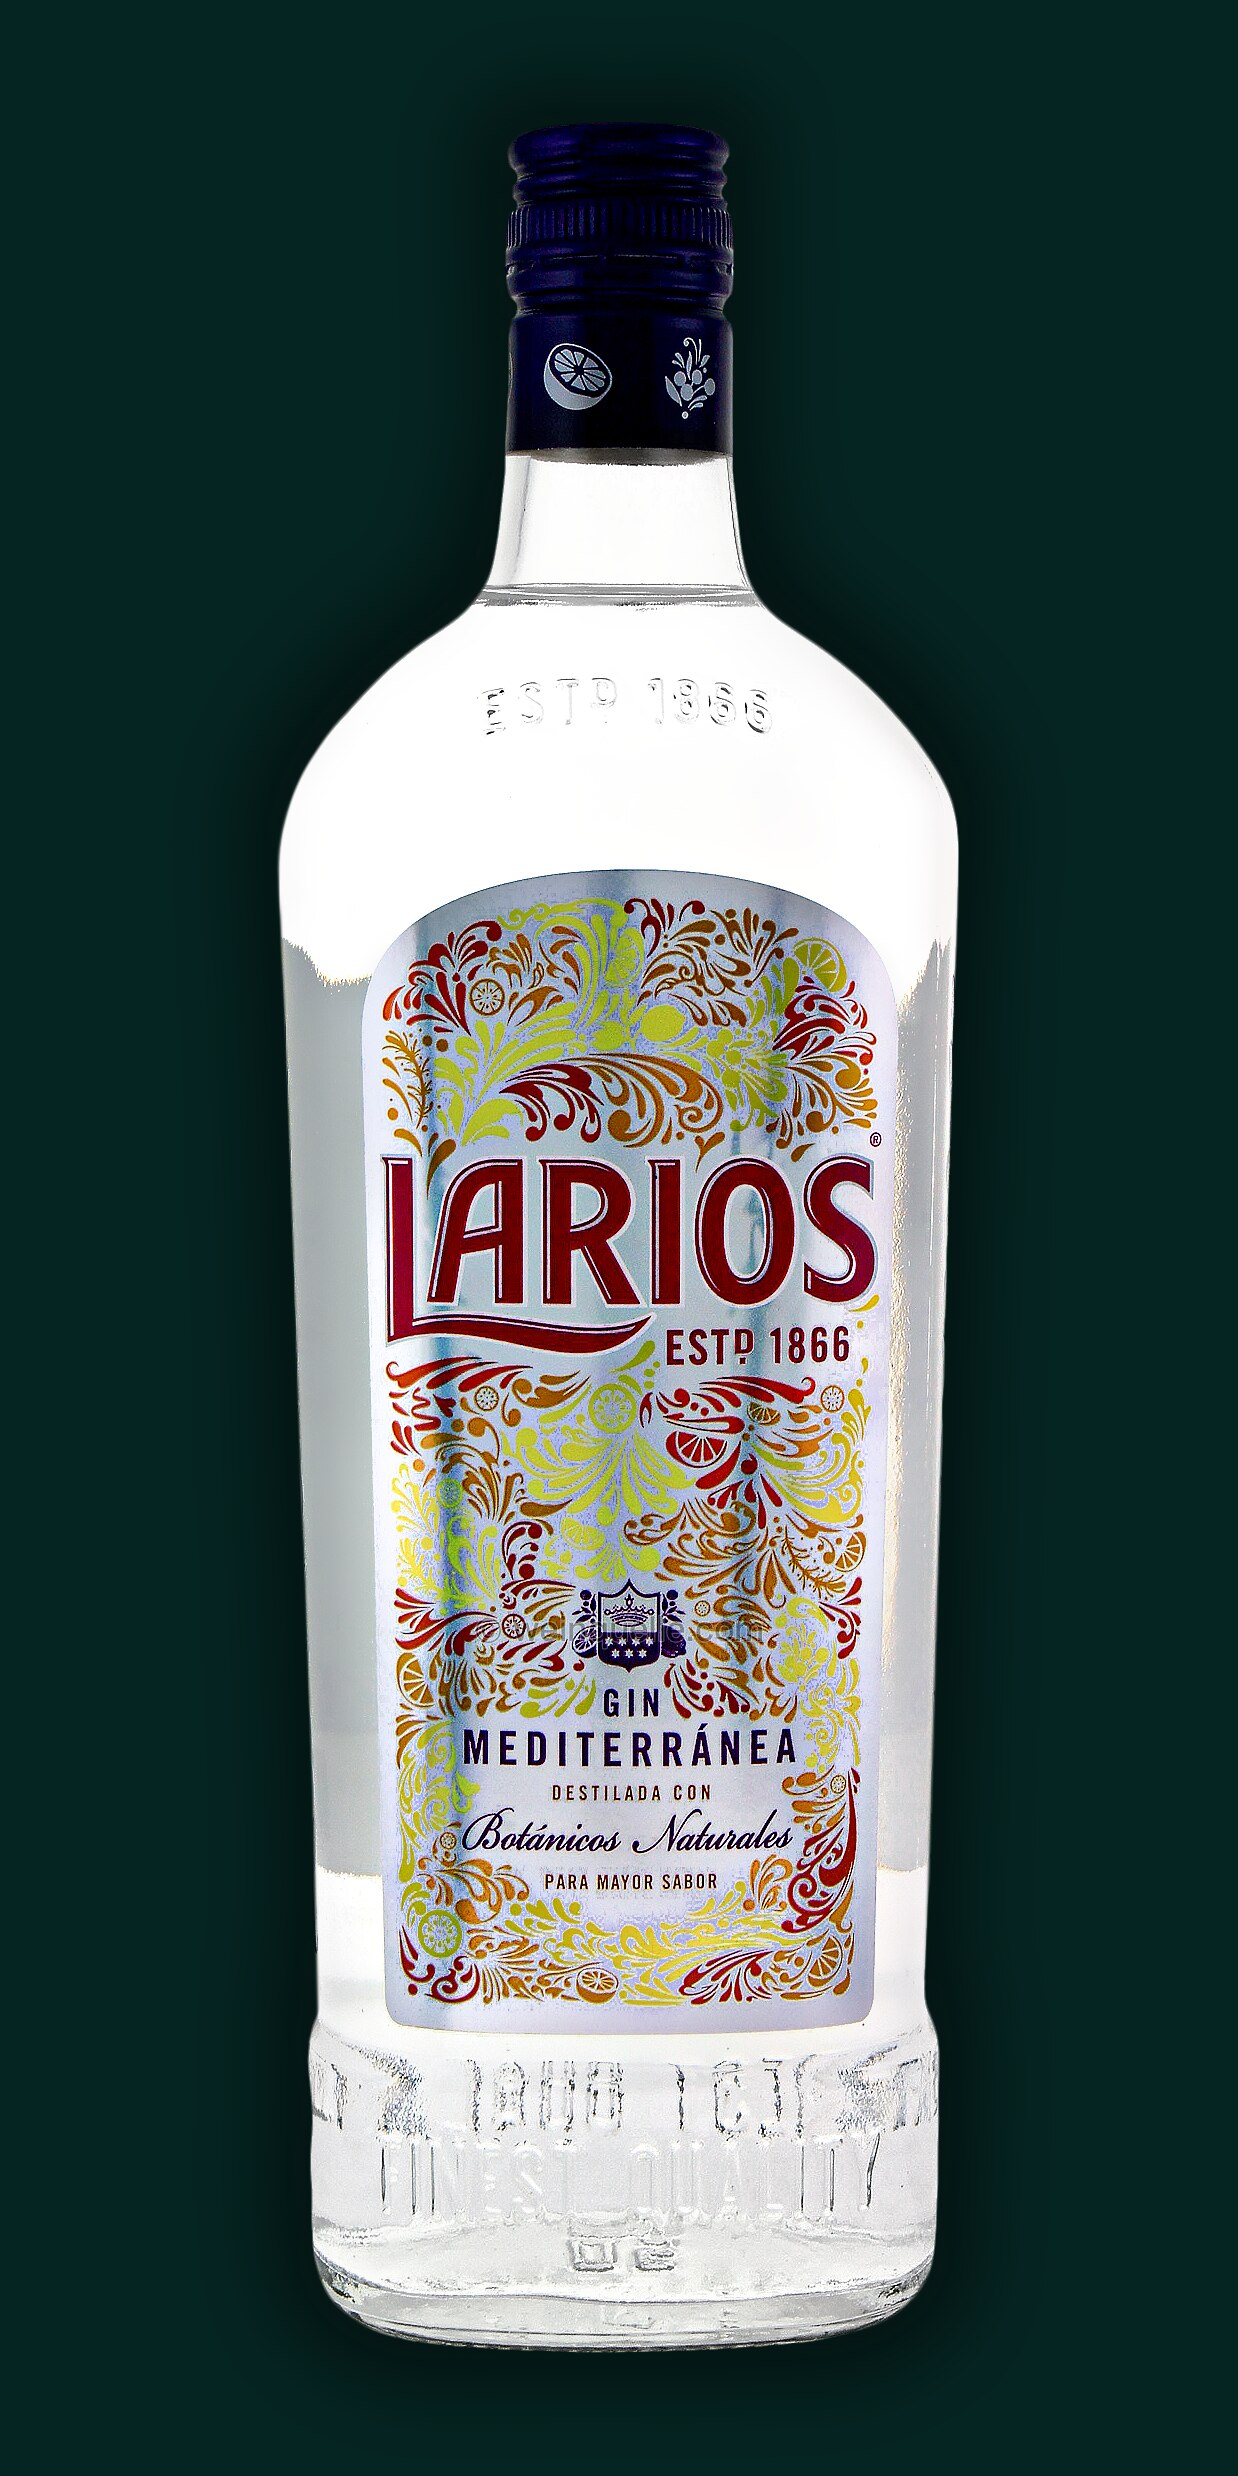 Dry Gin 37,5% Liter Weinquelle 1,0 Lühmann - Larios